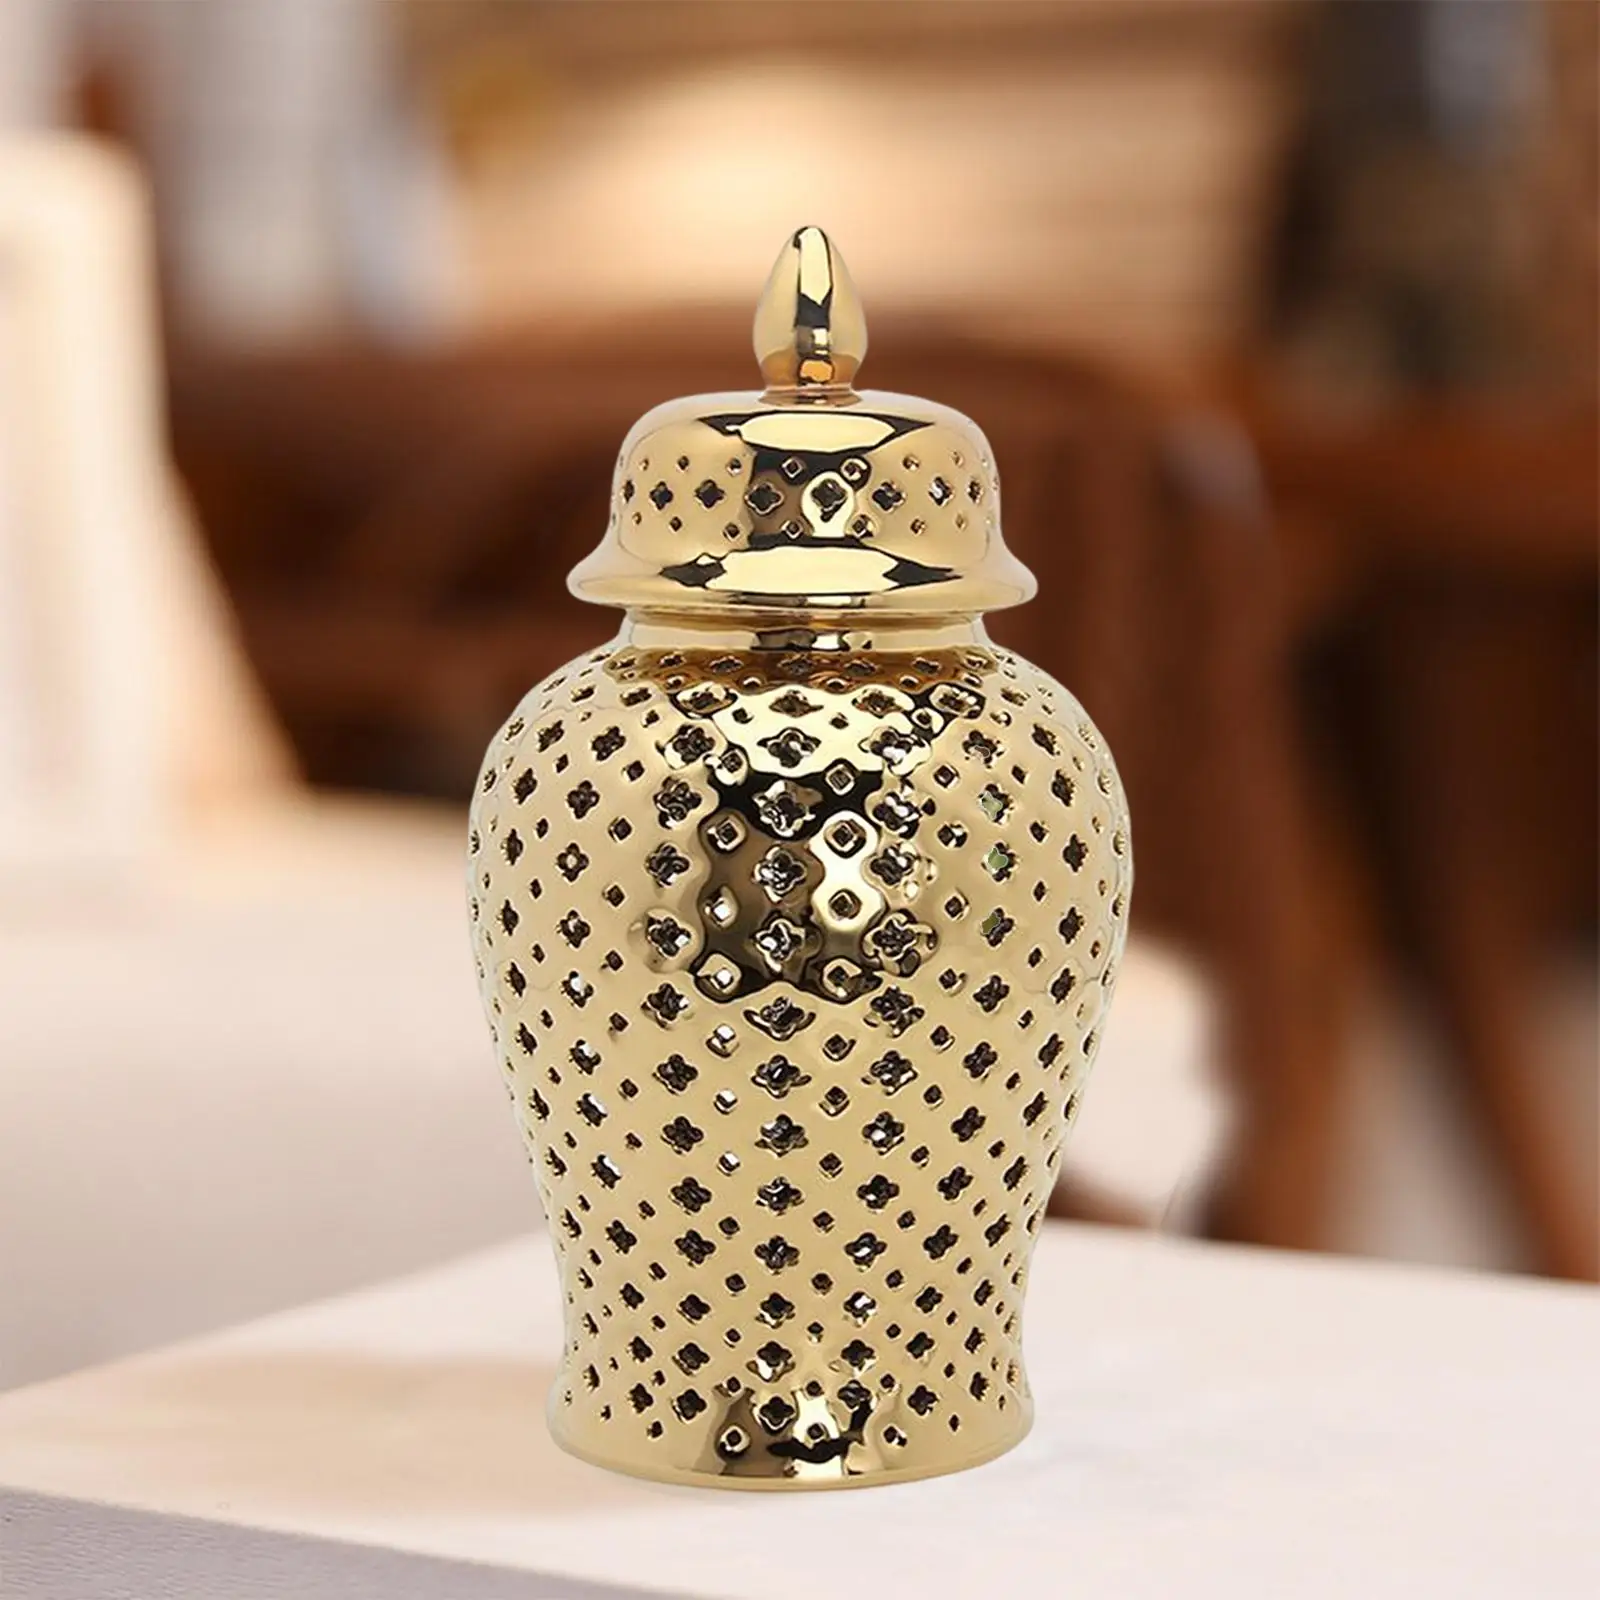 Traditional Ceramic Ginger Jar Decorative Temple Jars Porcelain Jar with Lid